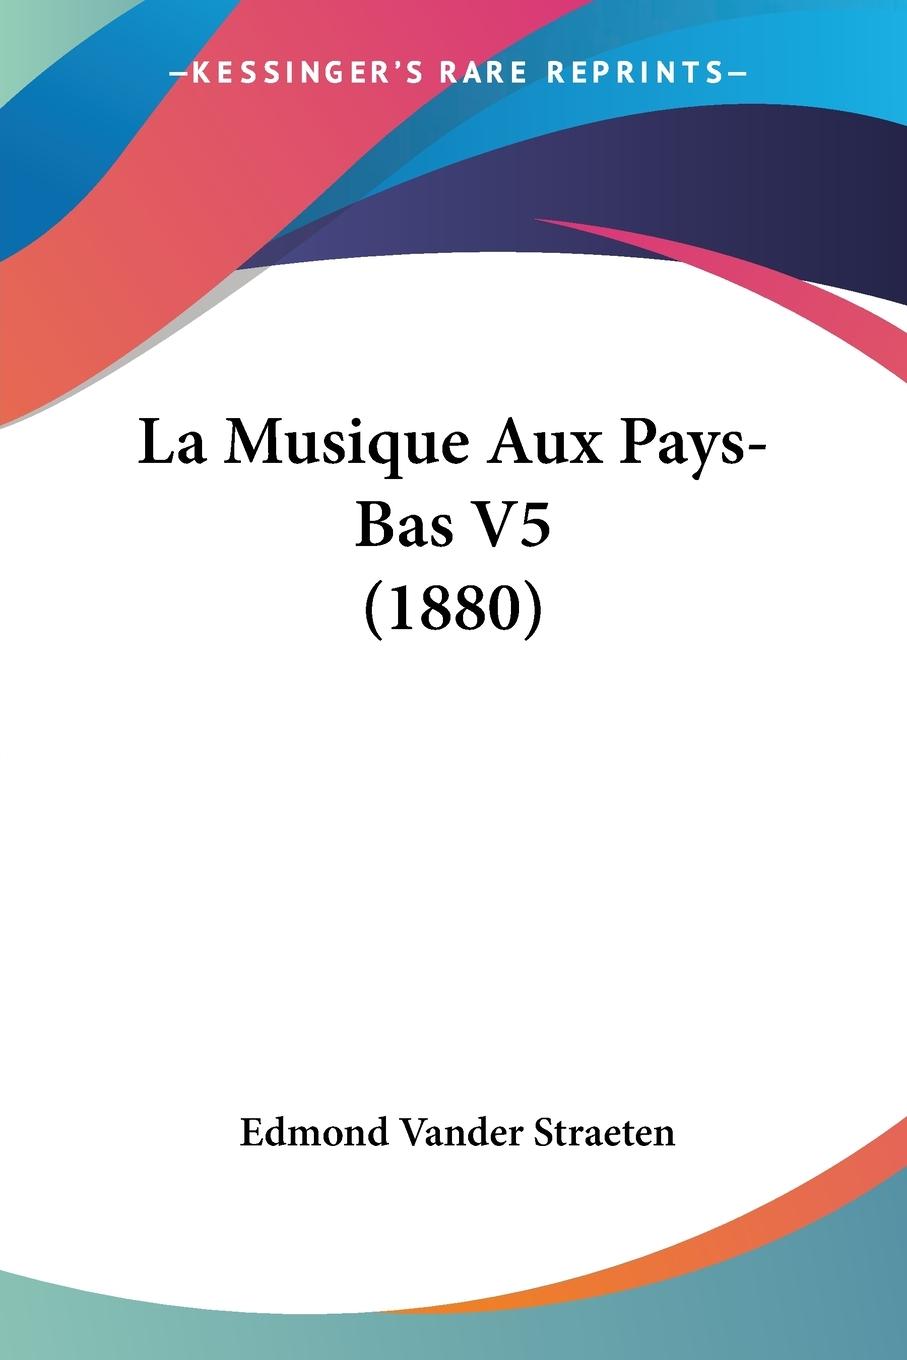 La Musique Aux Pays-Bas V5 (1880) - Straeten, Edmond Vander